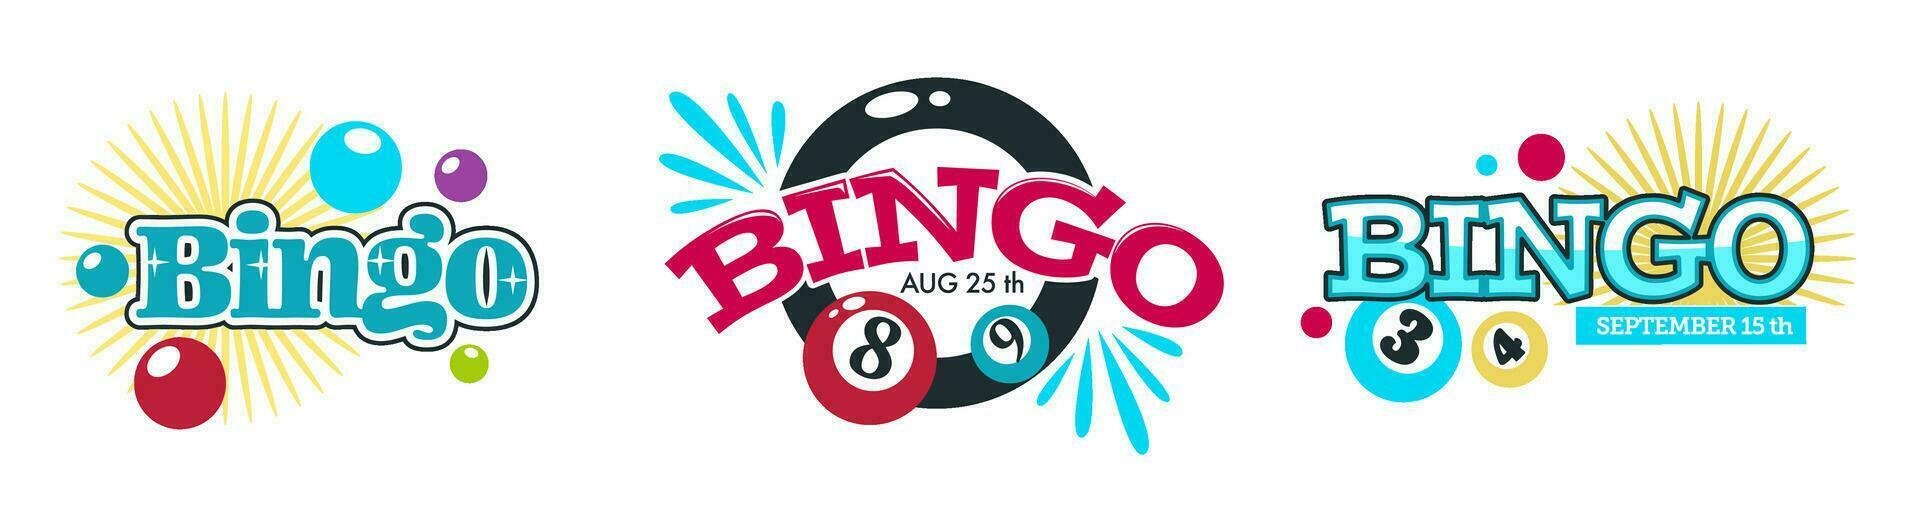 bingo och hasardspel spel, underhållning och roligt vektor